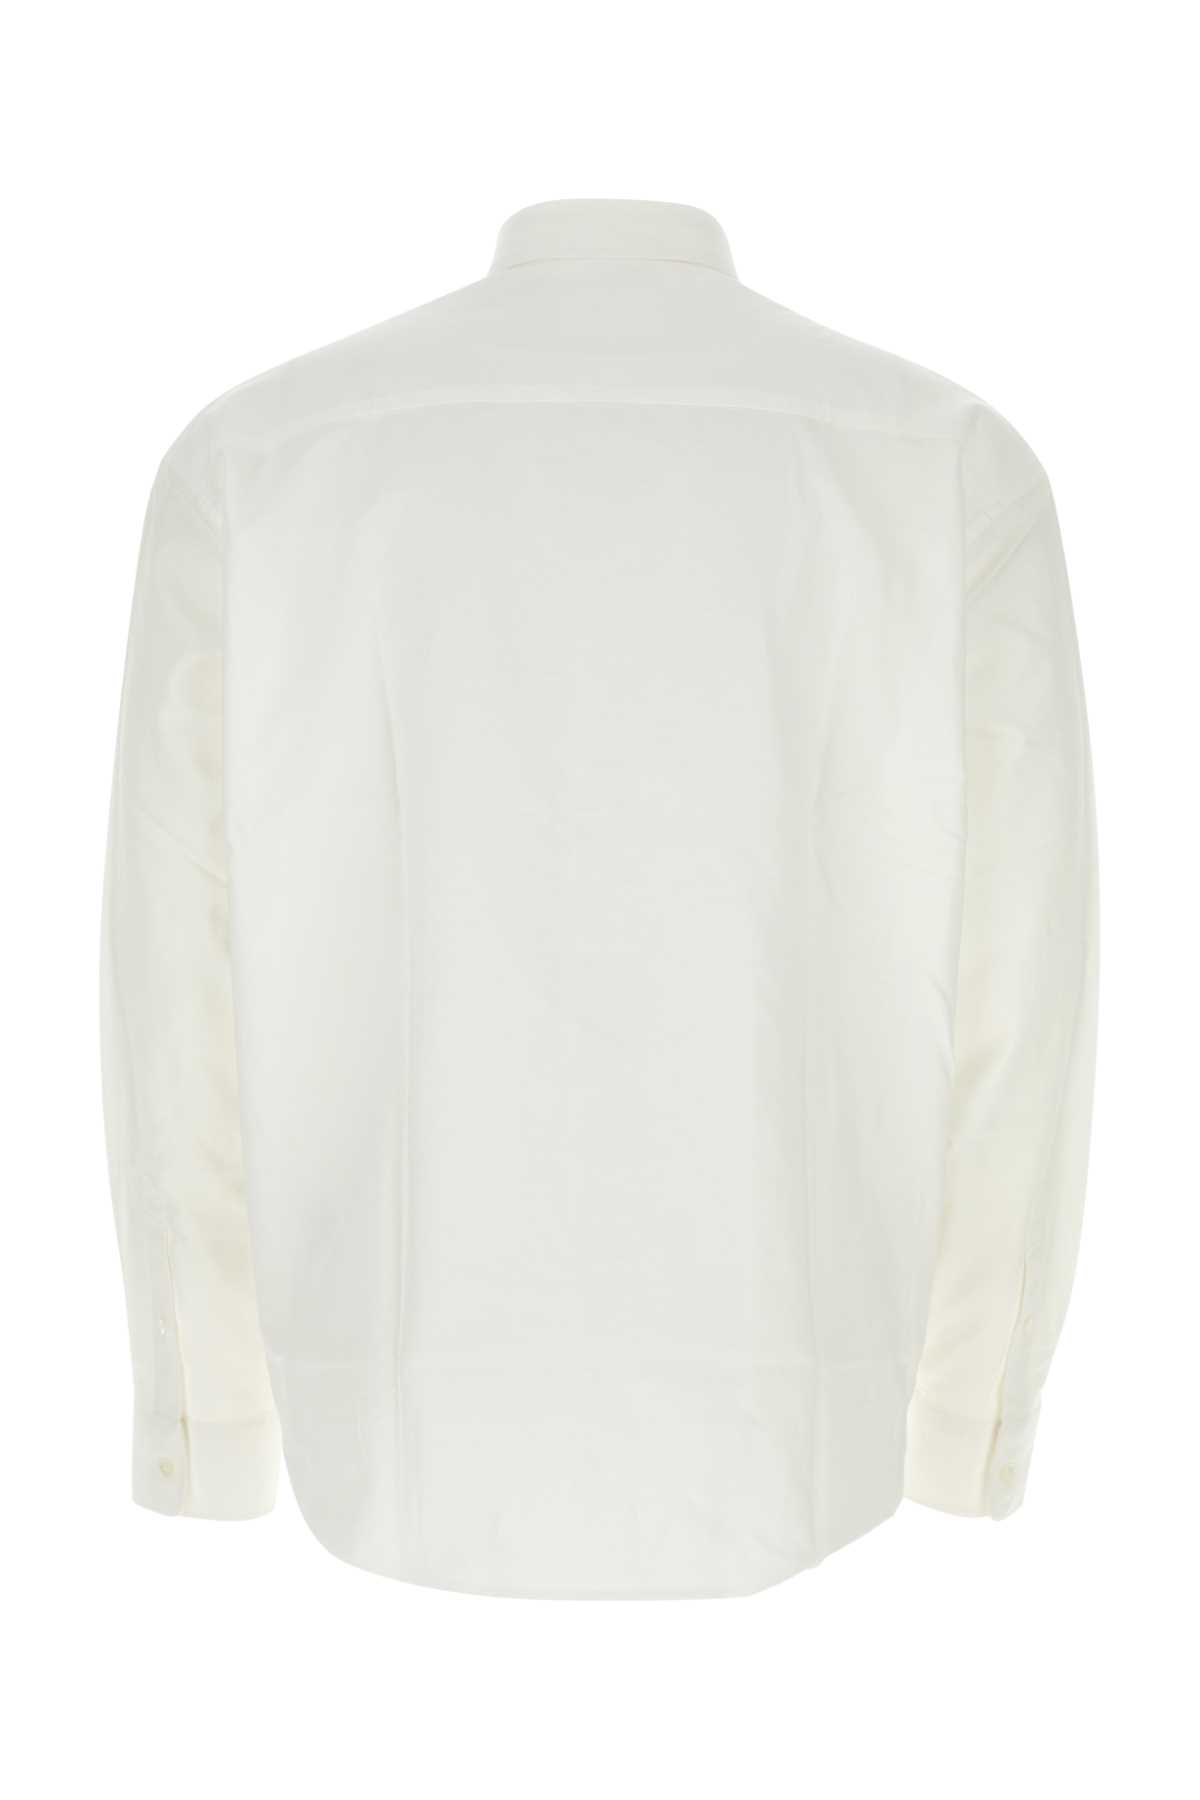 Ami Alexandre Mattiussi White Poplin Shirt In Naturalwhite